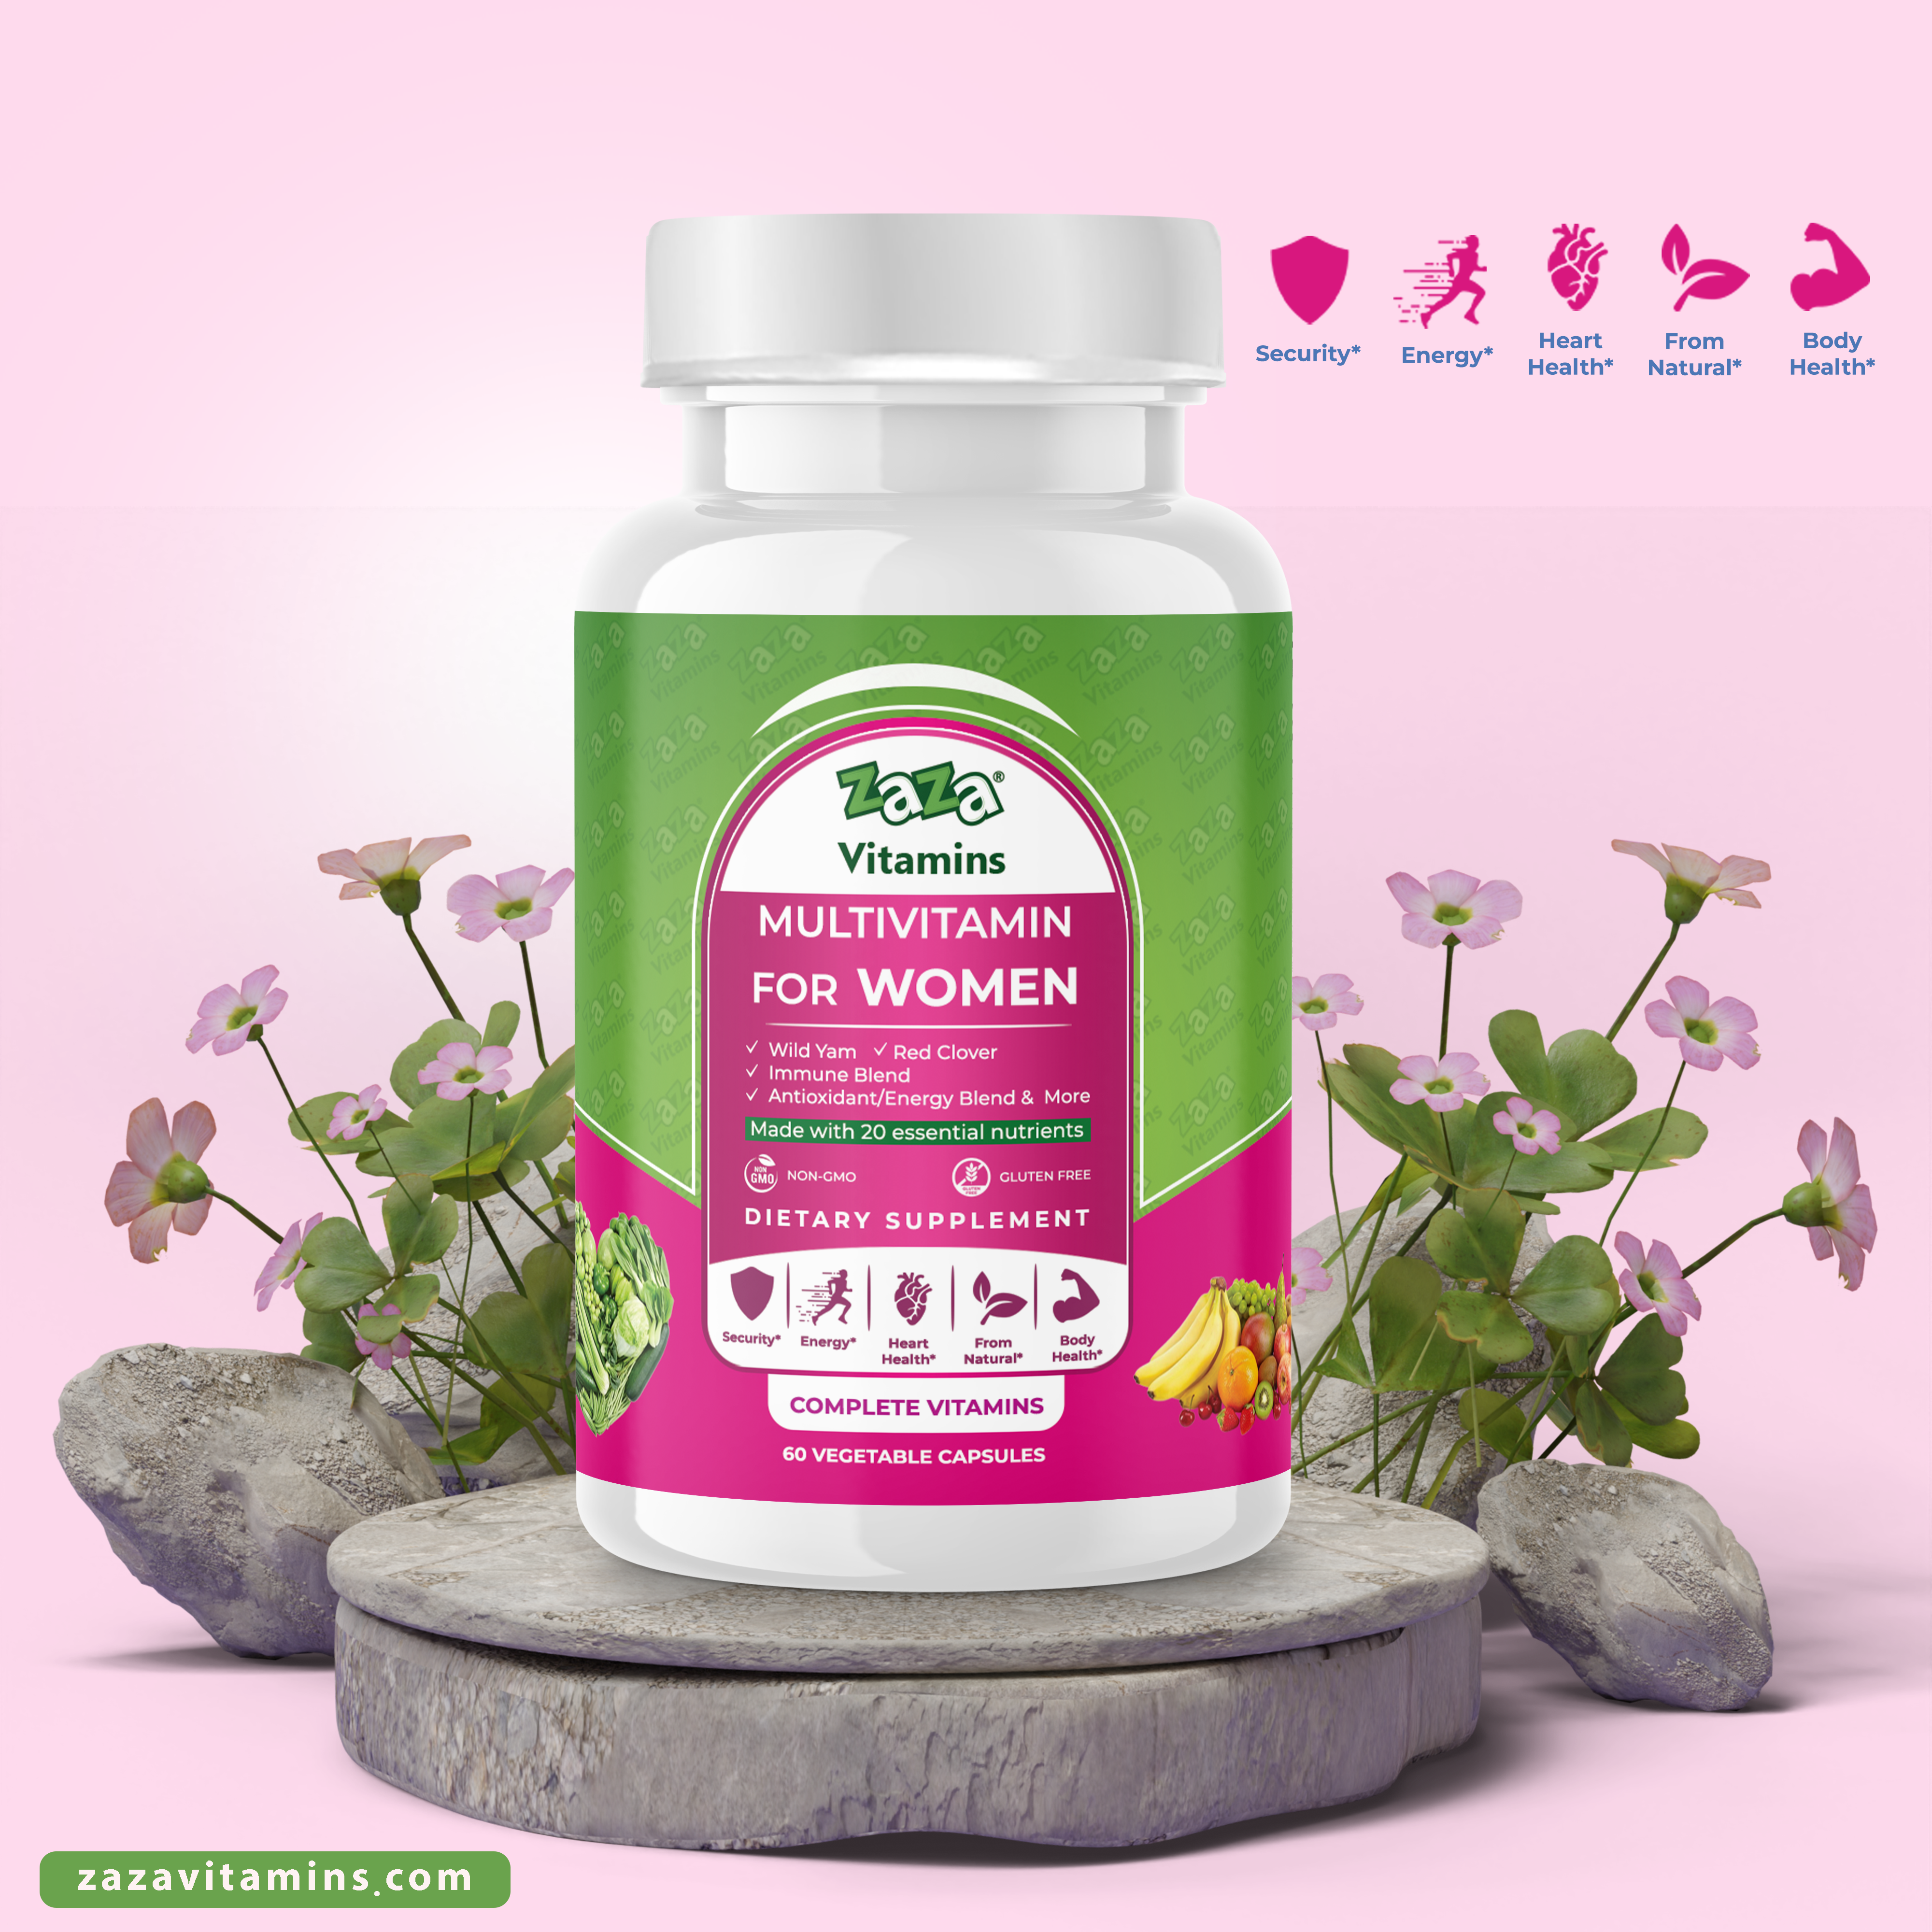 Multivitamin for Women 60 VEGETABLE CAPSULES